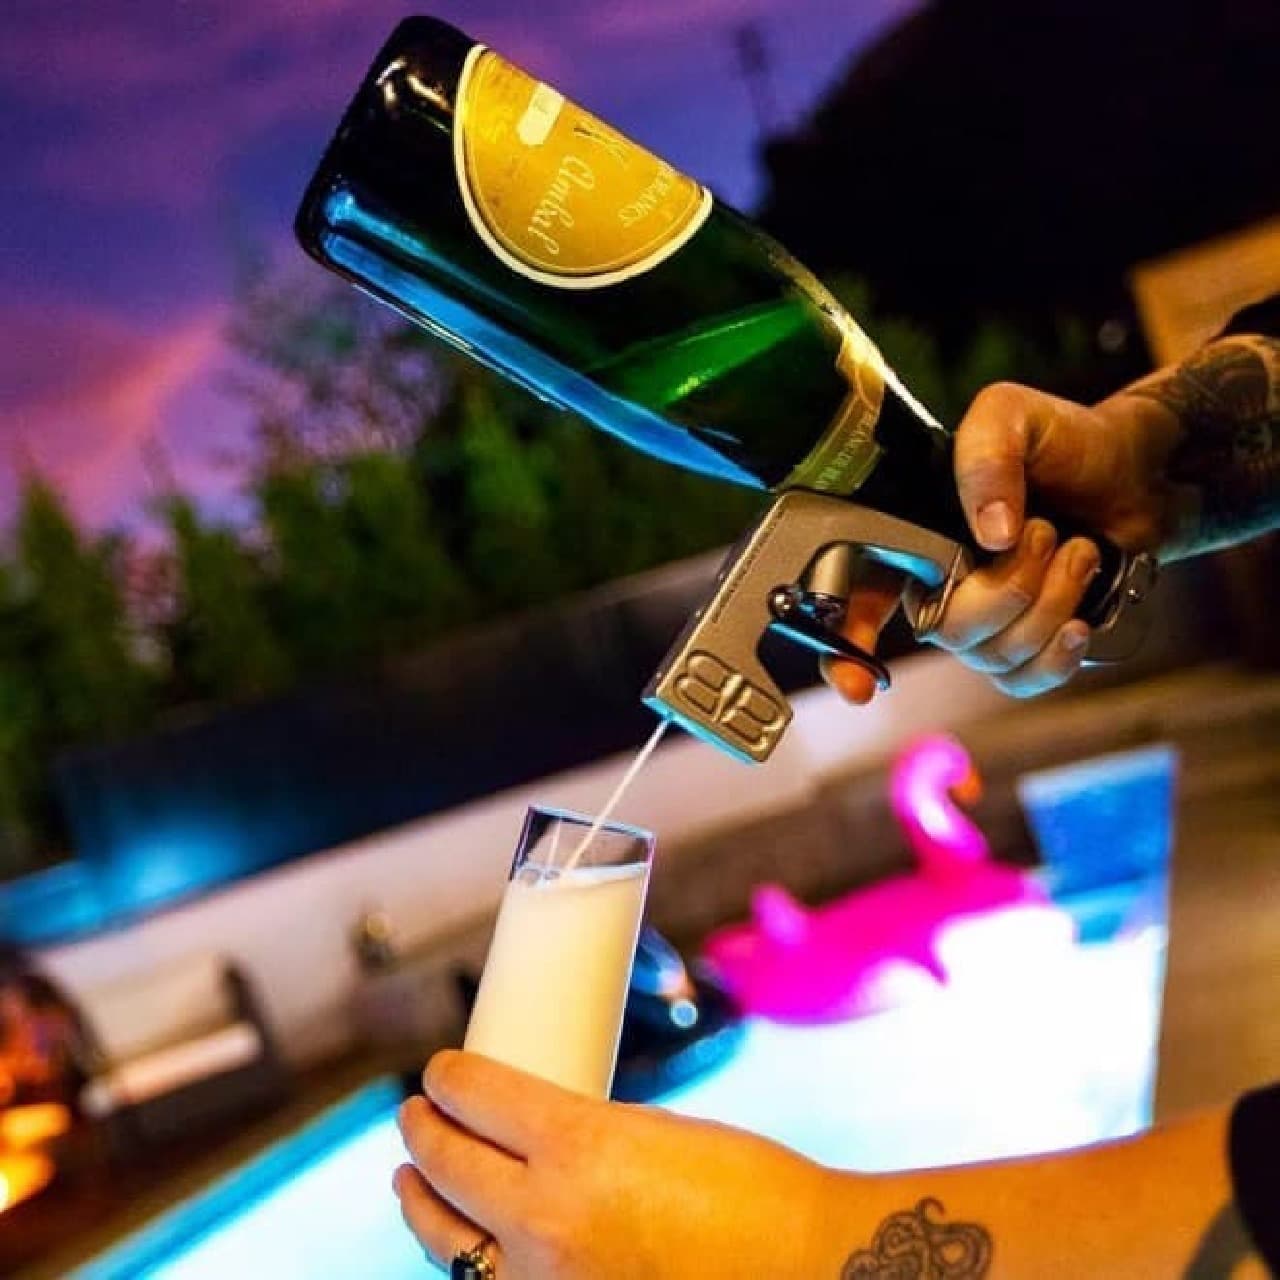 シャンパンファイトを手軽に、経済的に楽しめる「Bubbly Blaster」